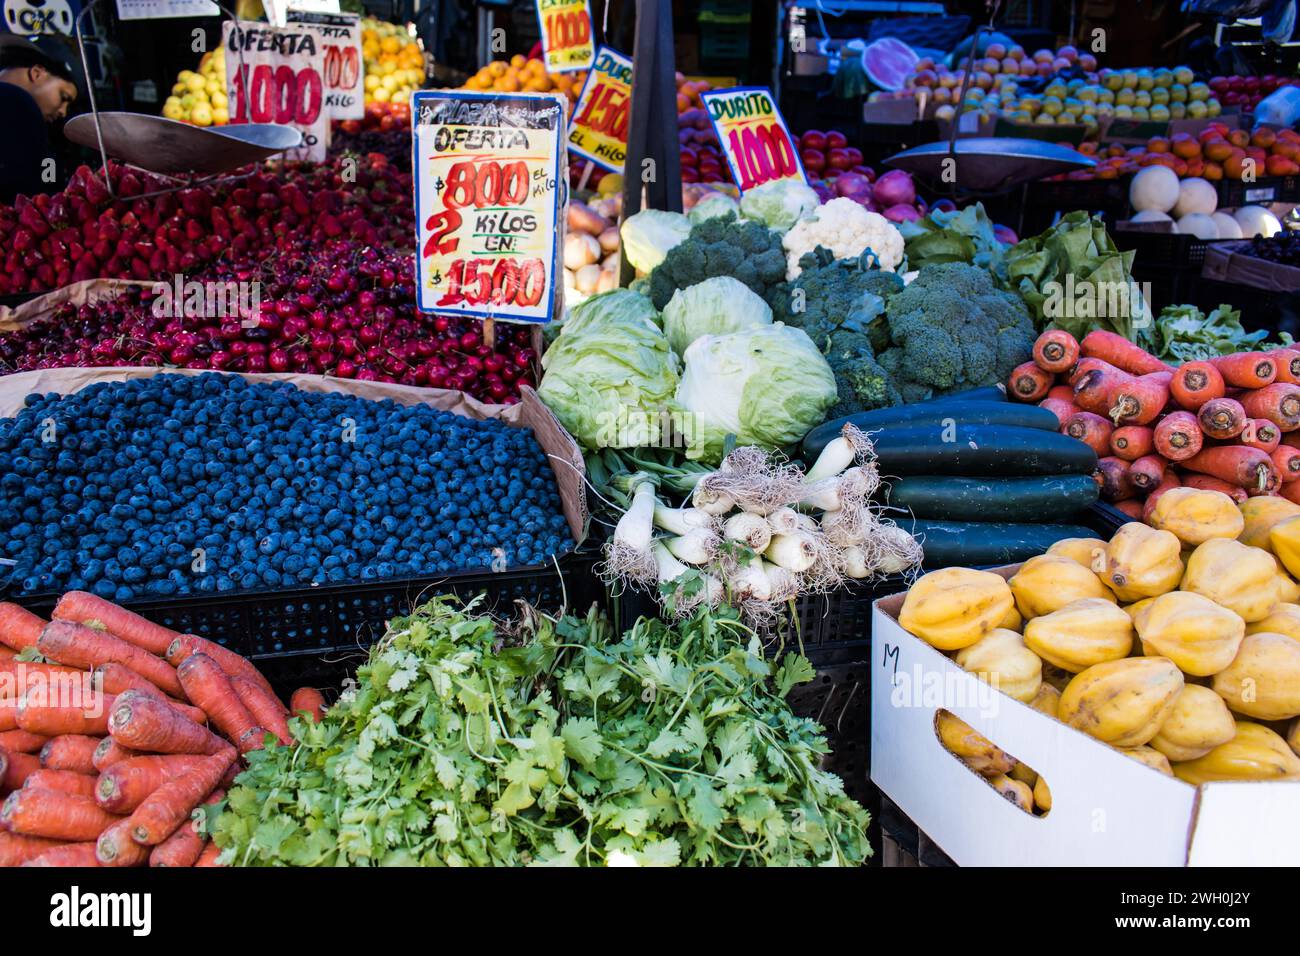 Die Marktstände rund um den Mercado Central in Chile bieten eine lebhafte Auswahl an Waren, darunter frisches Obst und Gemüse. Stockfoto